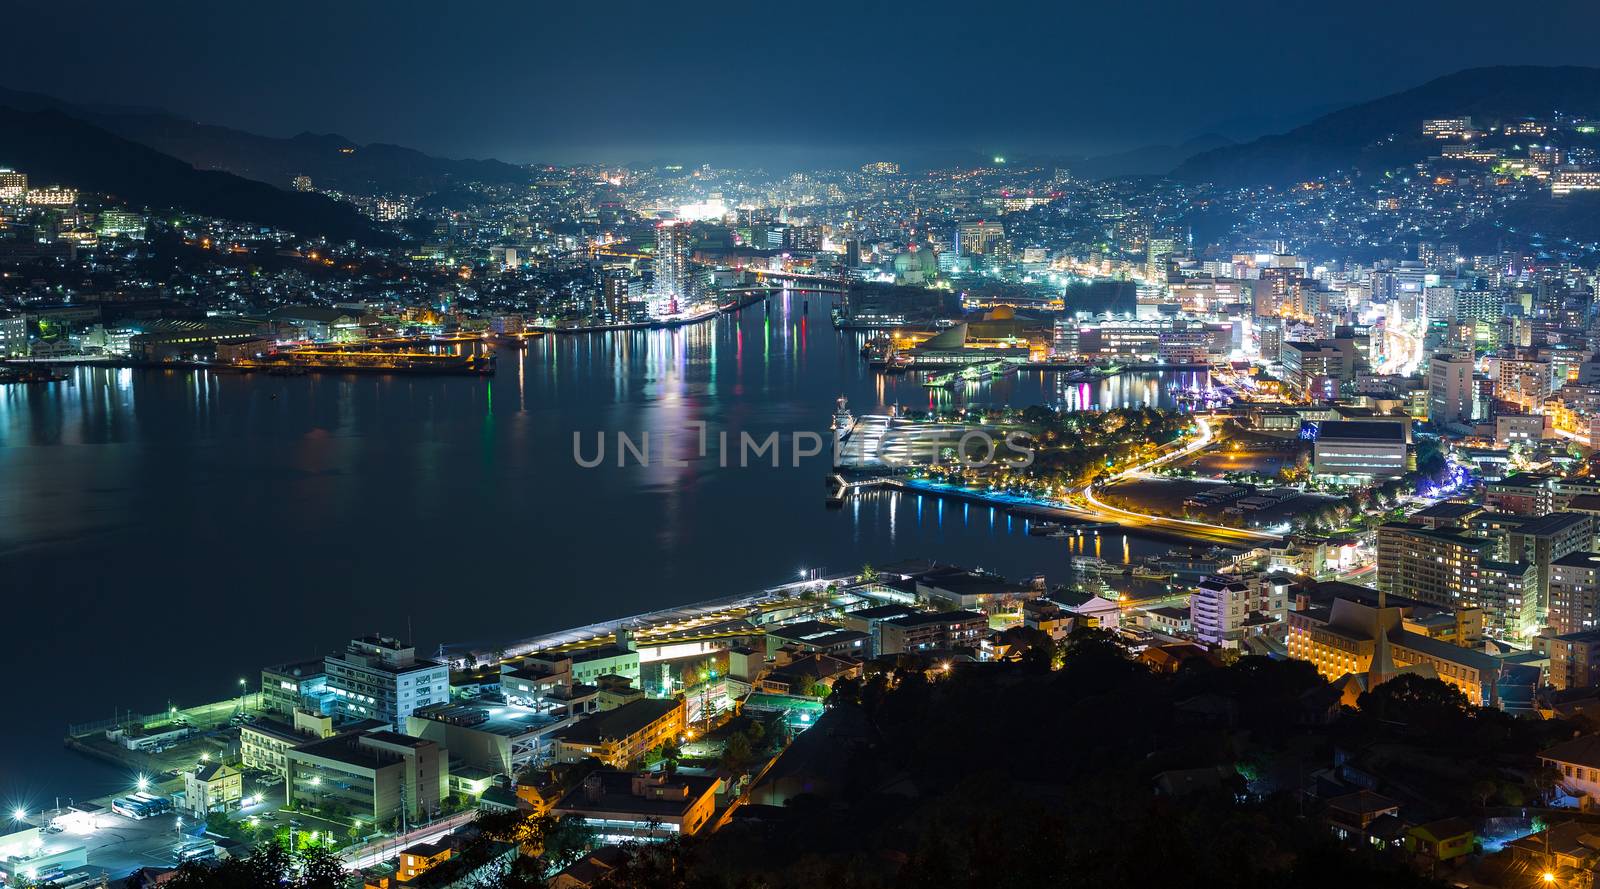 Nagasaki city at night by leungchopan